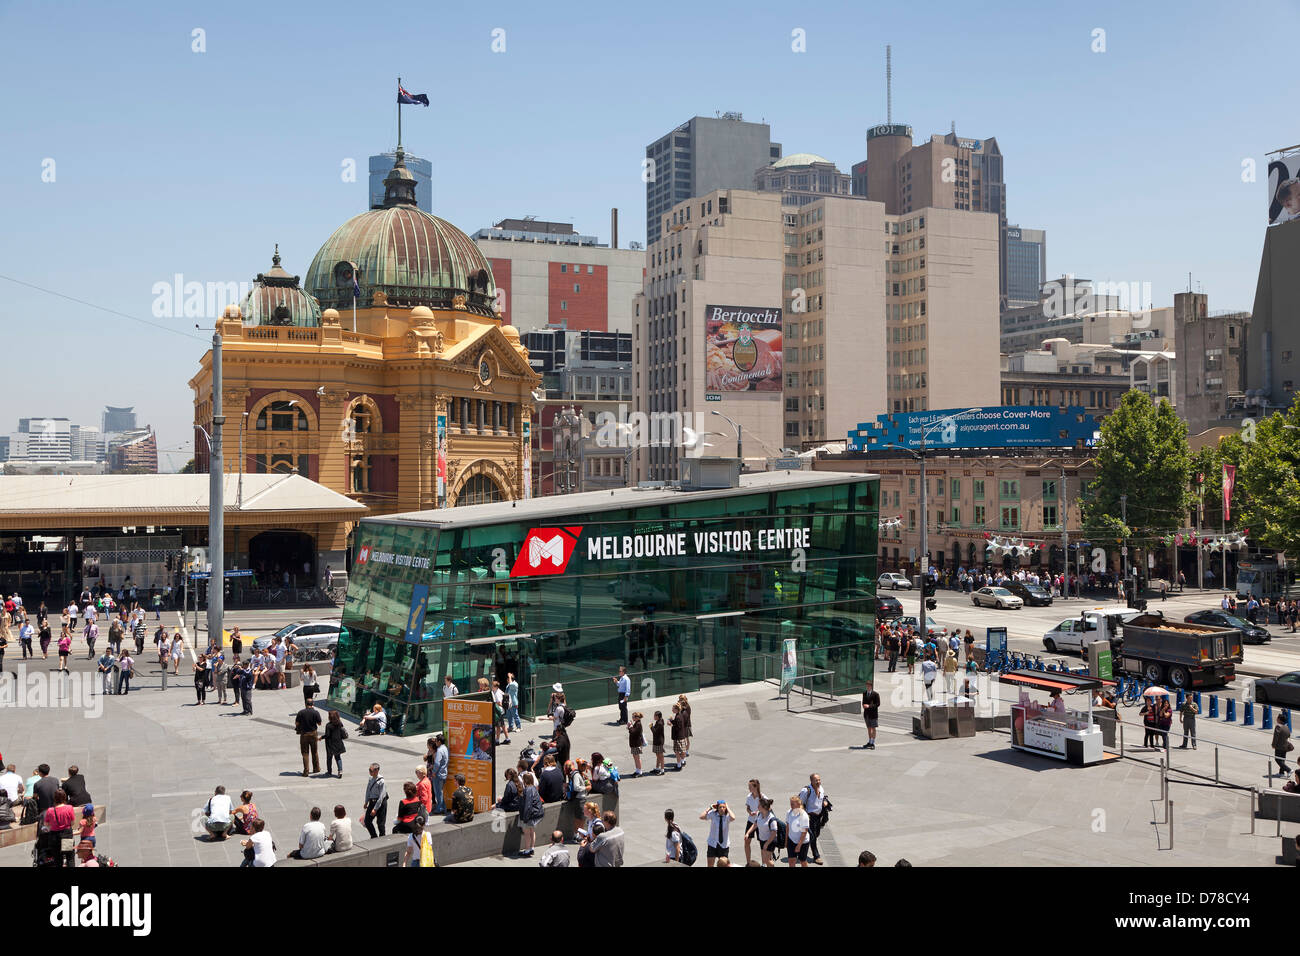 Melbourne Visitor Centre at Federation Square, Victoria, Australia Foto Stock